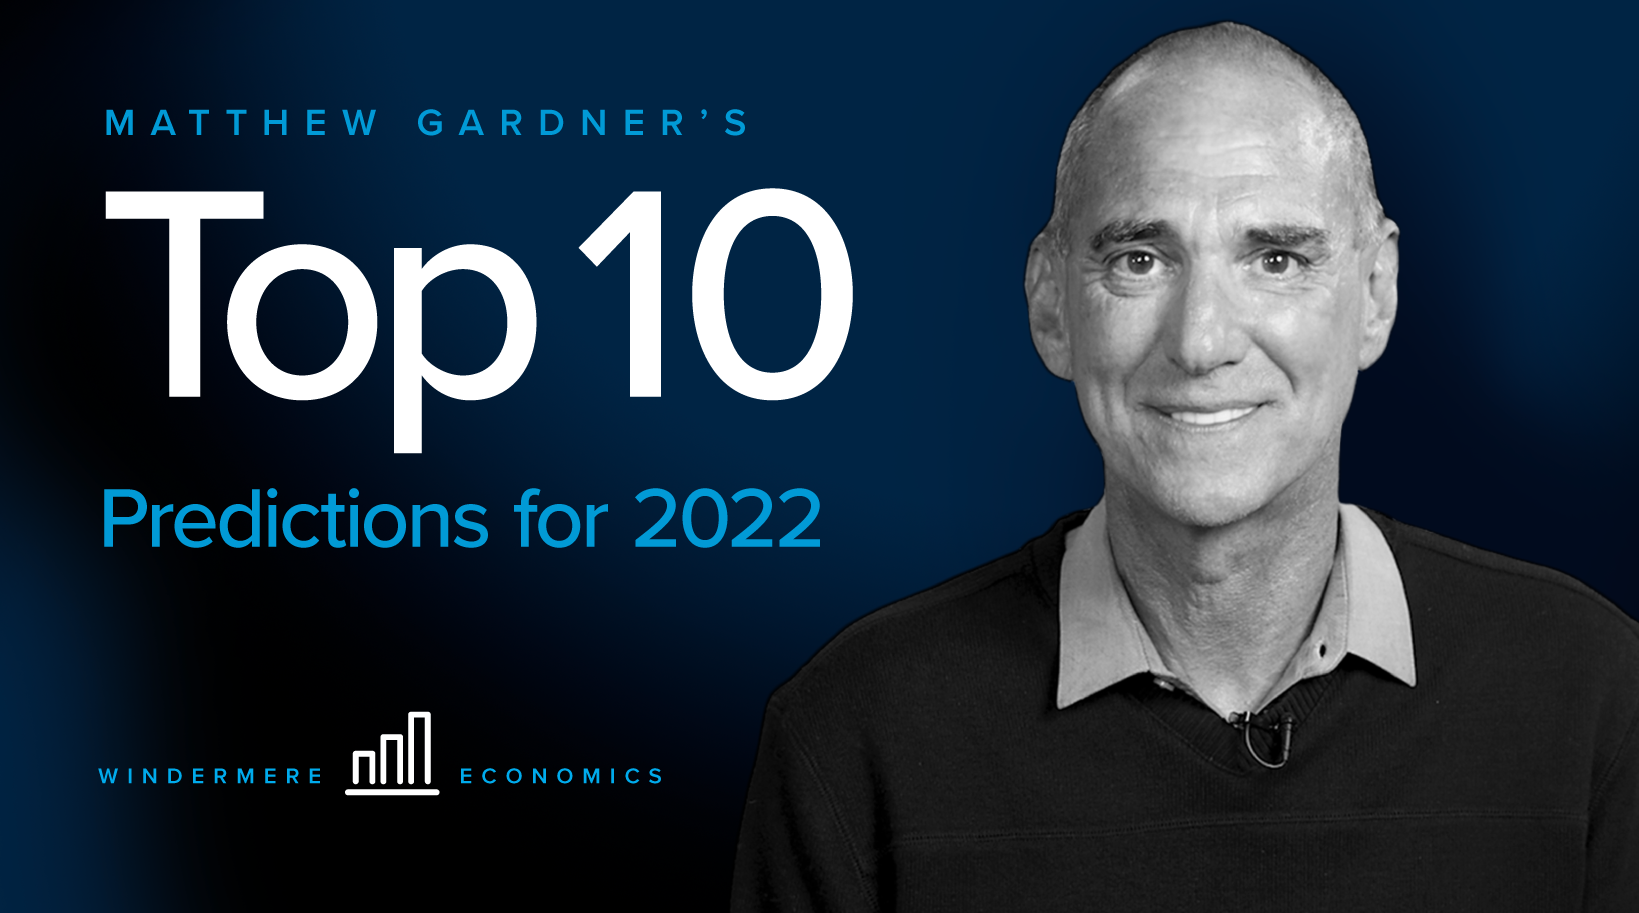 MAtthew Gardner's Top 10 Predictions for 2022